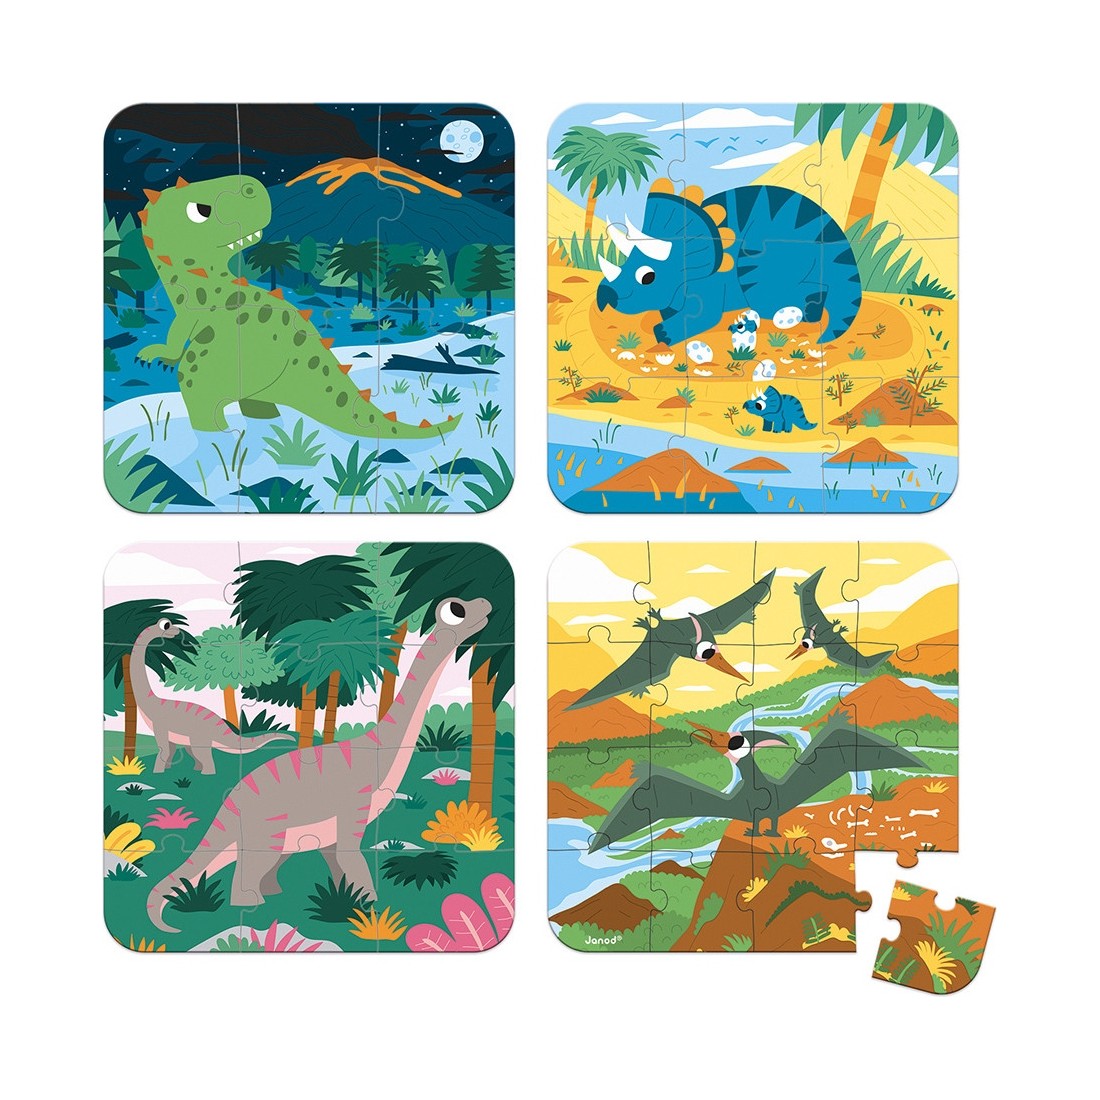 Puzzle dinosaures - Idée cadeau pour anniversaire dinosaure